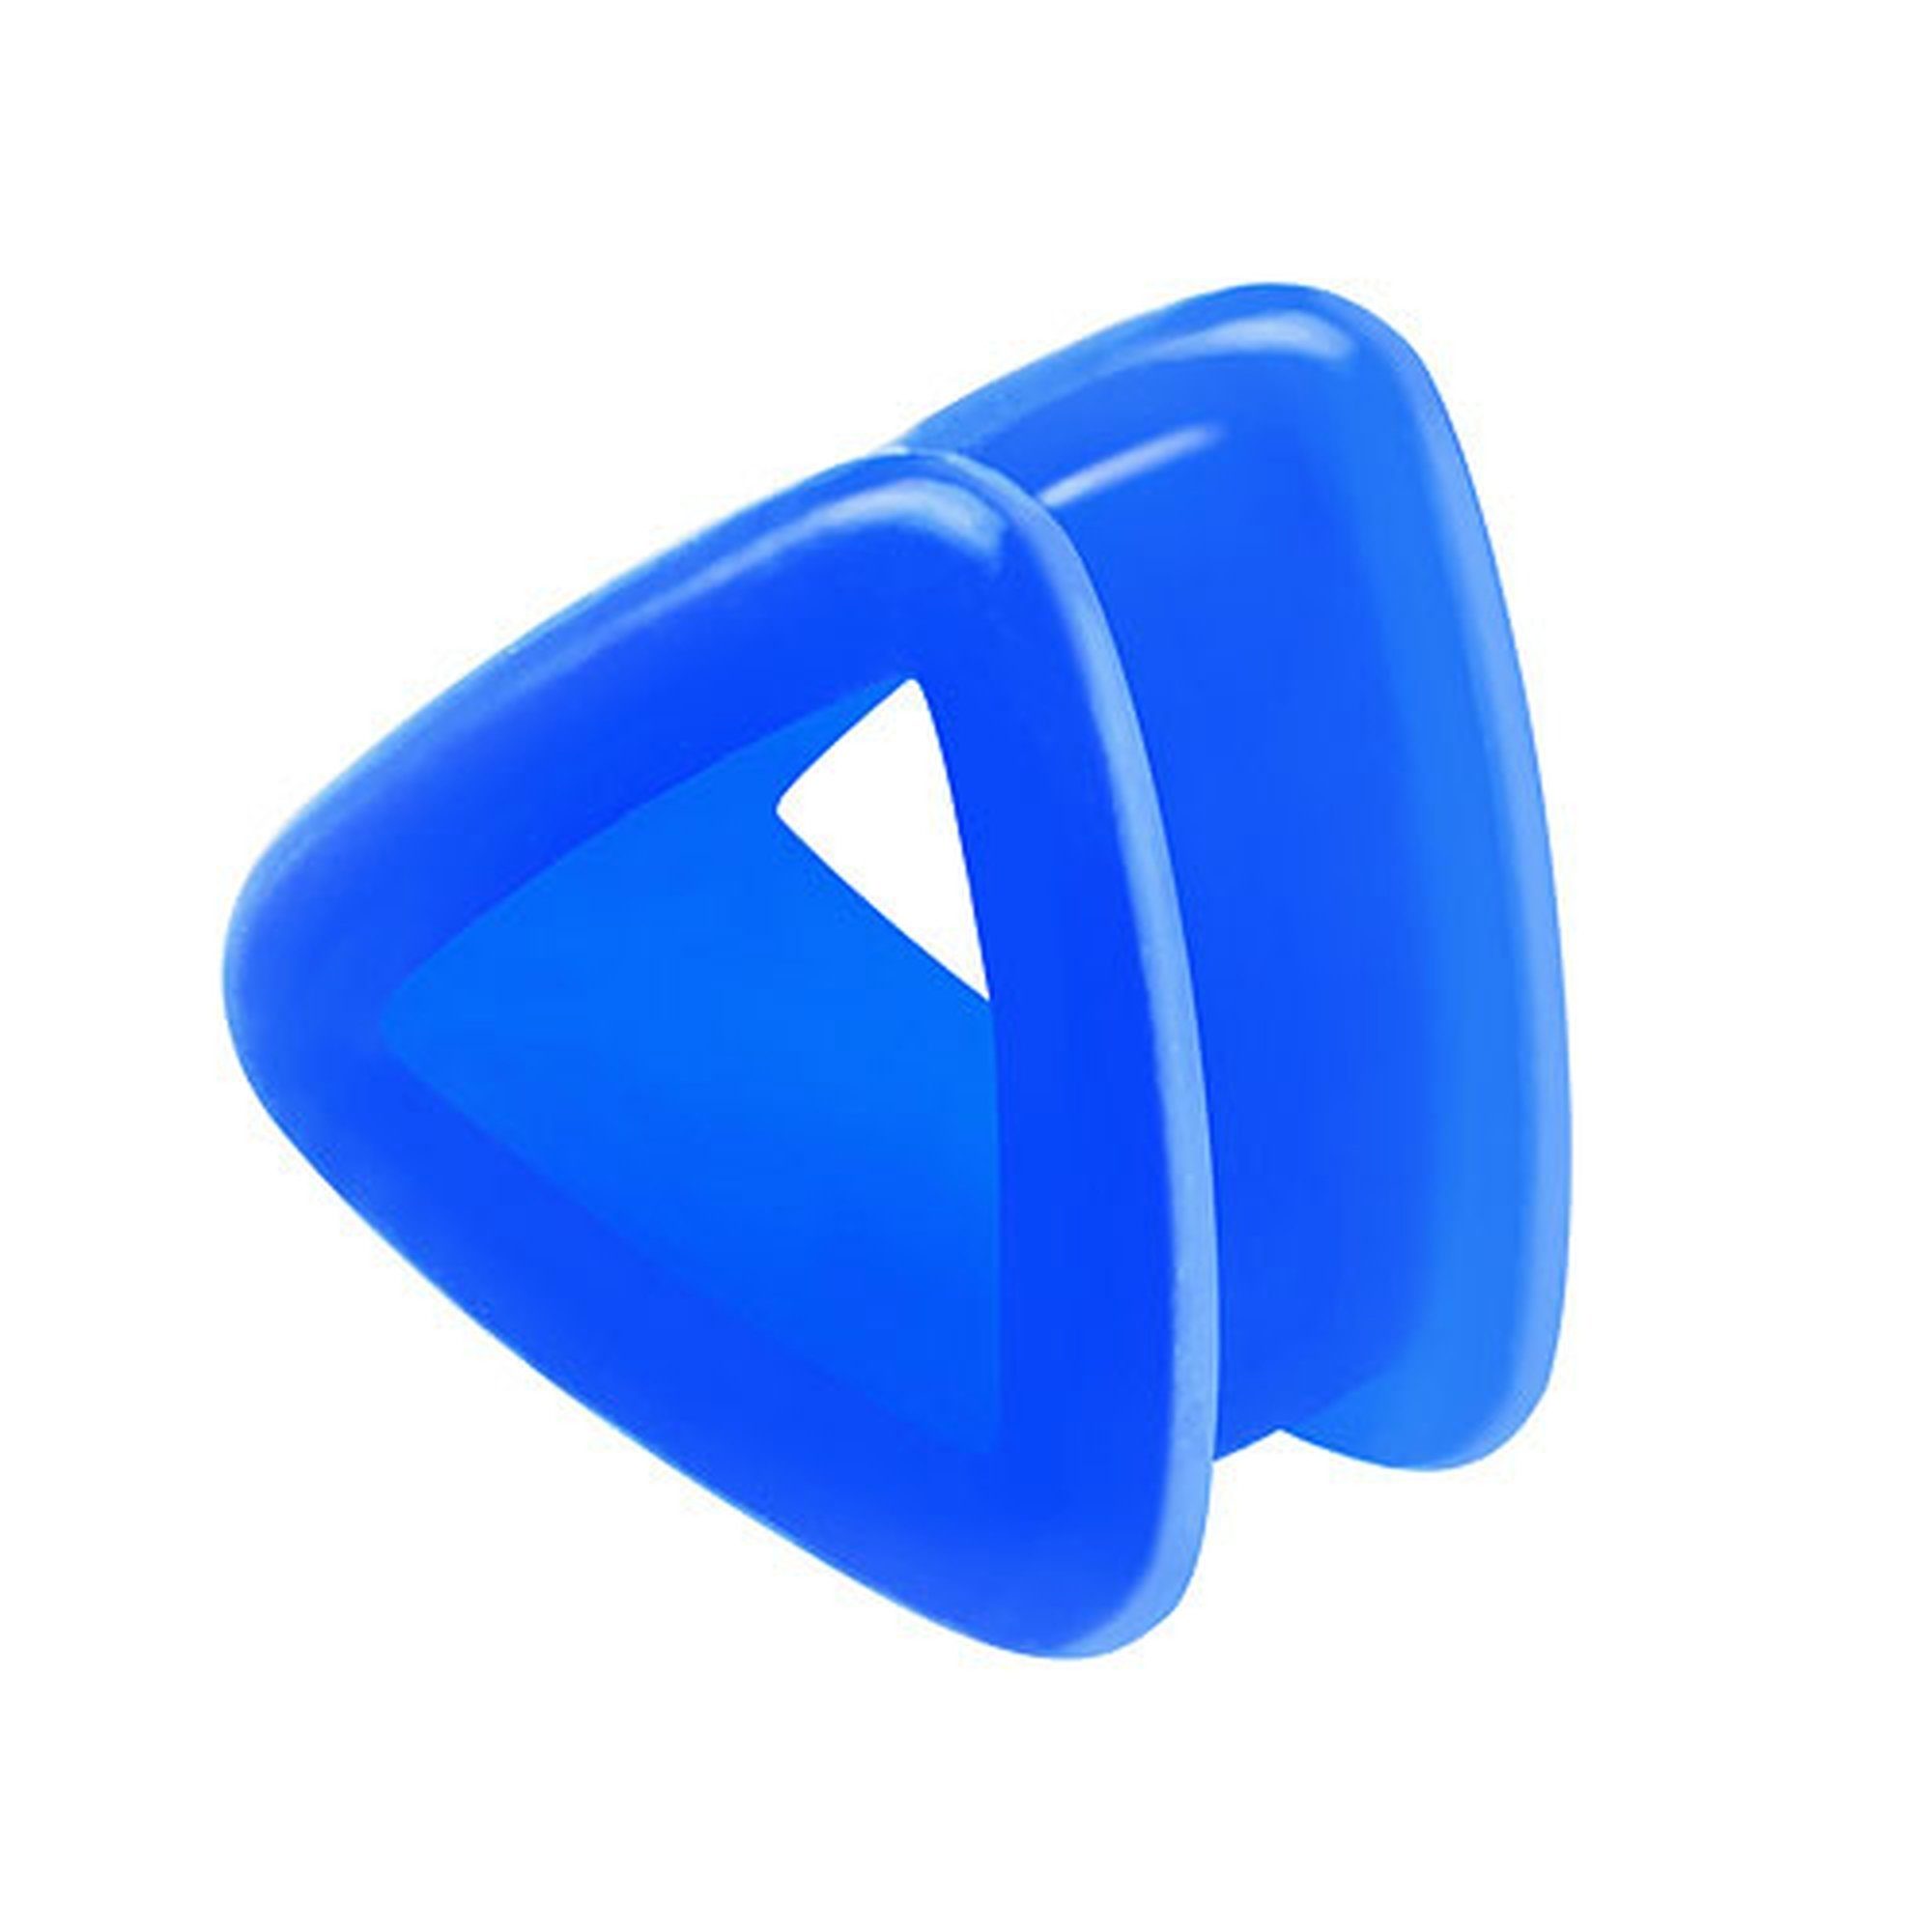 Taffstyle Plug Piercing Flexibel Ohr Plug Flexibel Flesh Dreieck, Dreieck Ohrpiercing Plug Blau Bunt Tunnel Silikon Piercing